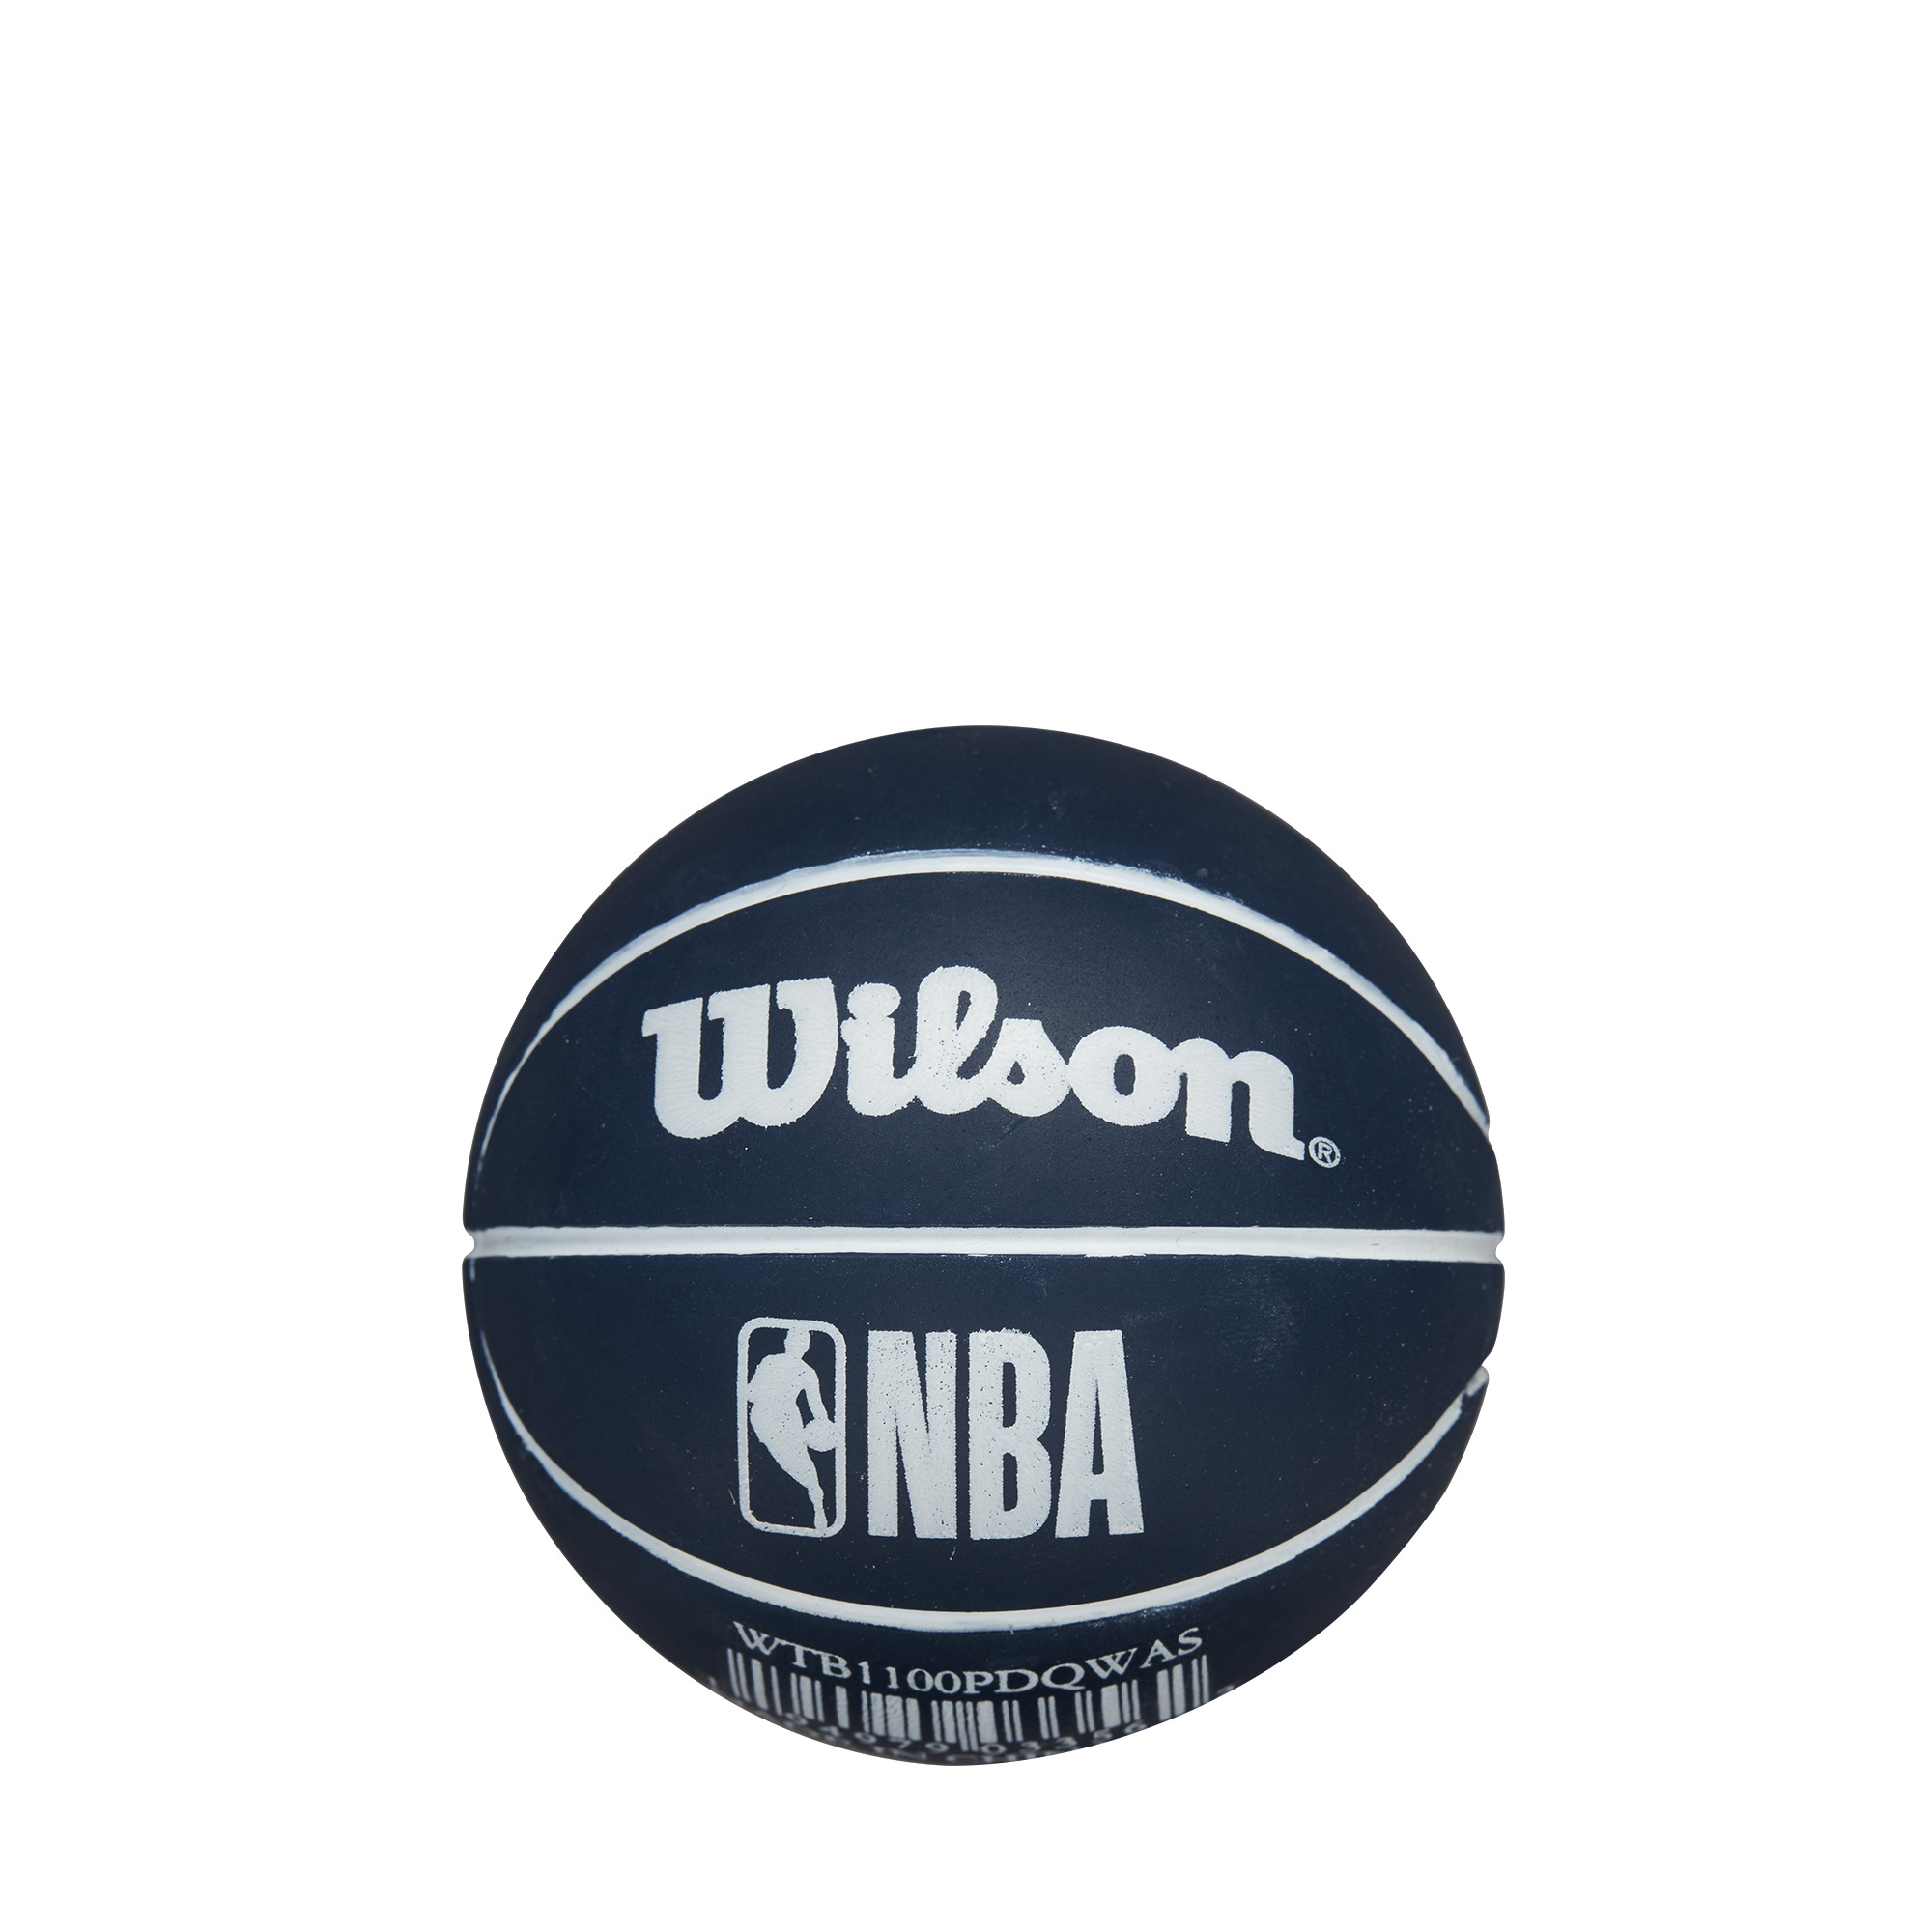 WILSON BASKETBALL DRIBBLER bumba NBA TEAM WASHINGTON WIZARDS WTB1100PDQWAS bumba